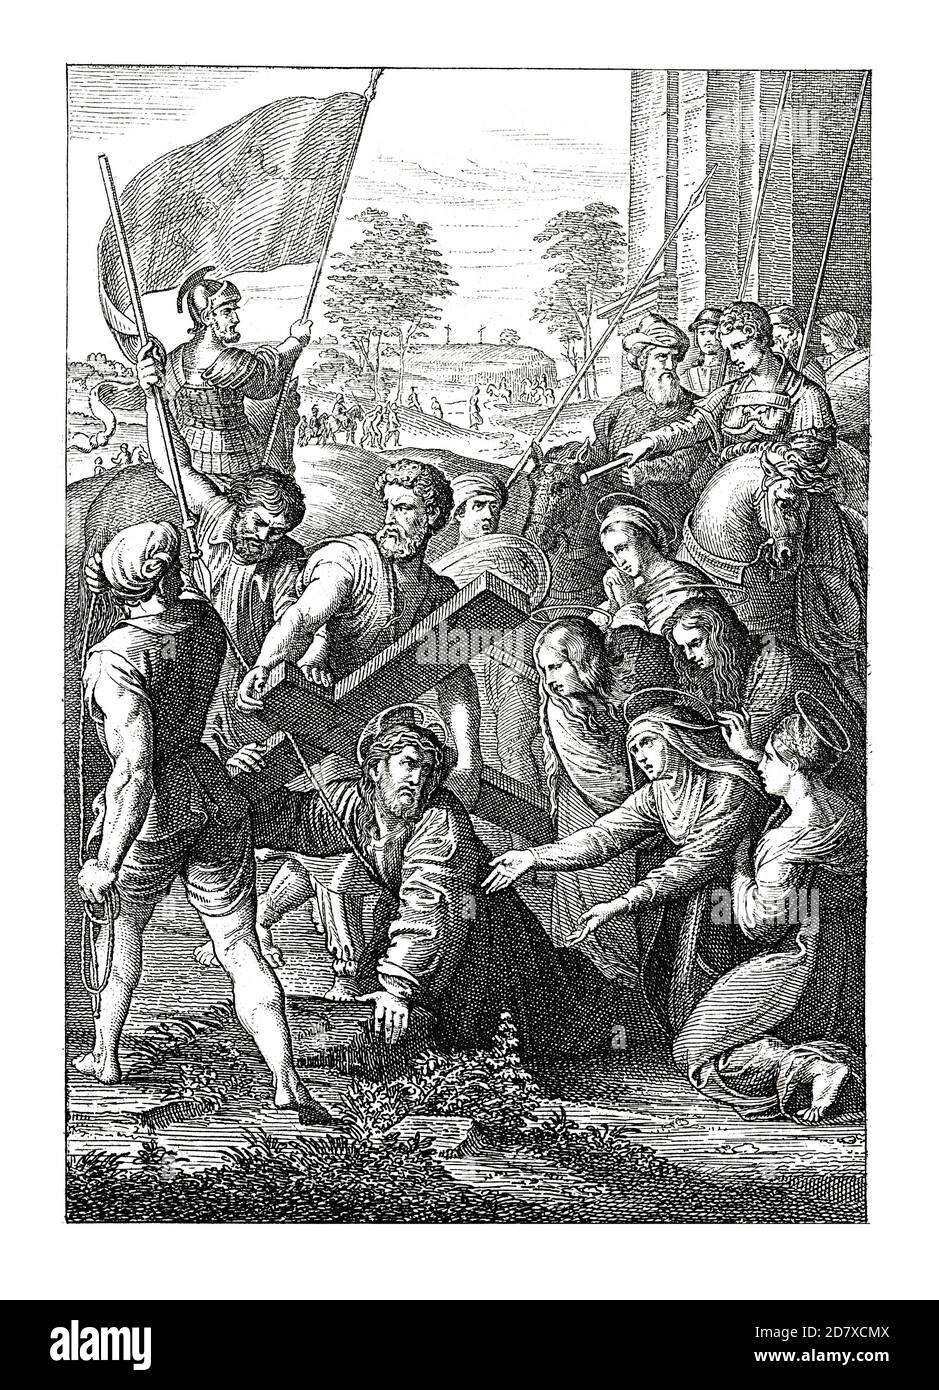 Gravure du XIXe siècle représentant le Christ portant la Croix, peinture de Raphaël (datée de env. 1516). Illustration publiée dans Systematischer Bilder Atlas Banque D'Images